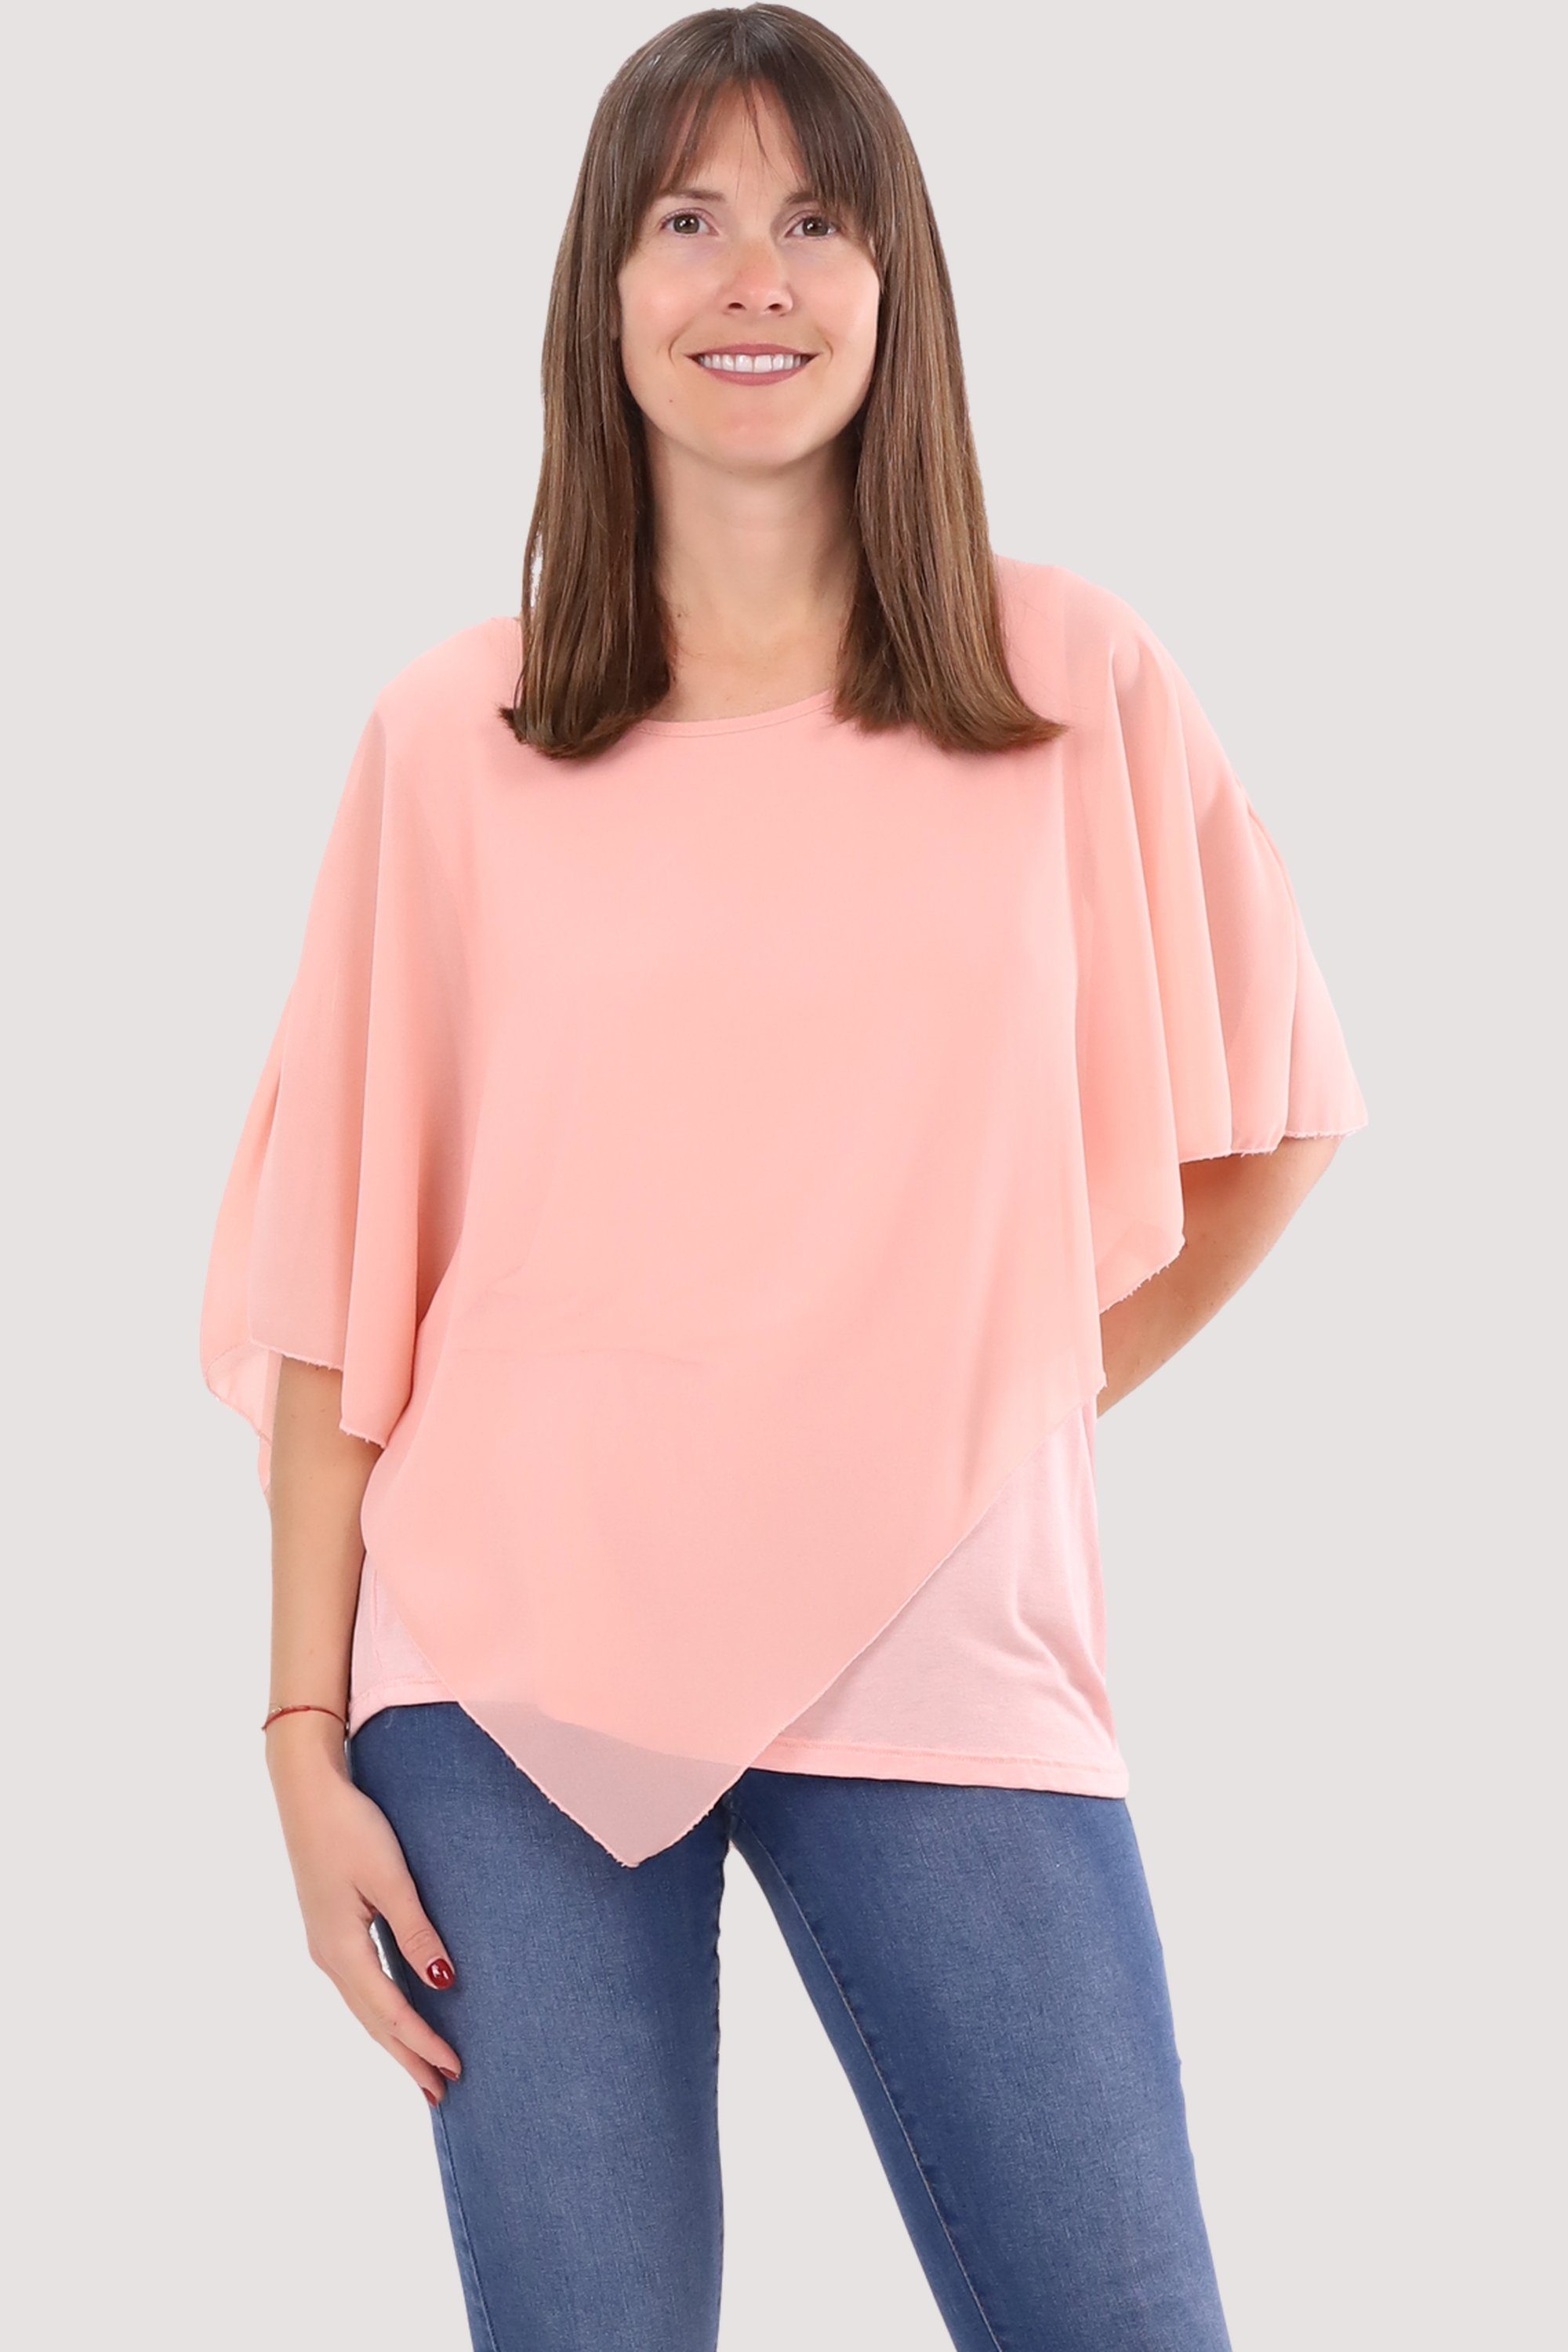 malito more than fashion Chiffonbluse 10732 Schlupfbluse Blusenshirt asymmetrisch geschnitten Einheitsgröße rosa